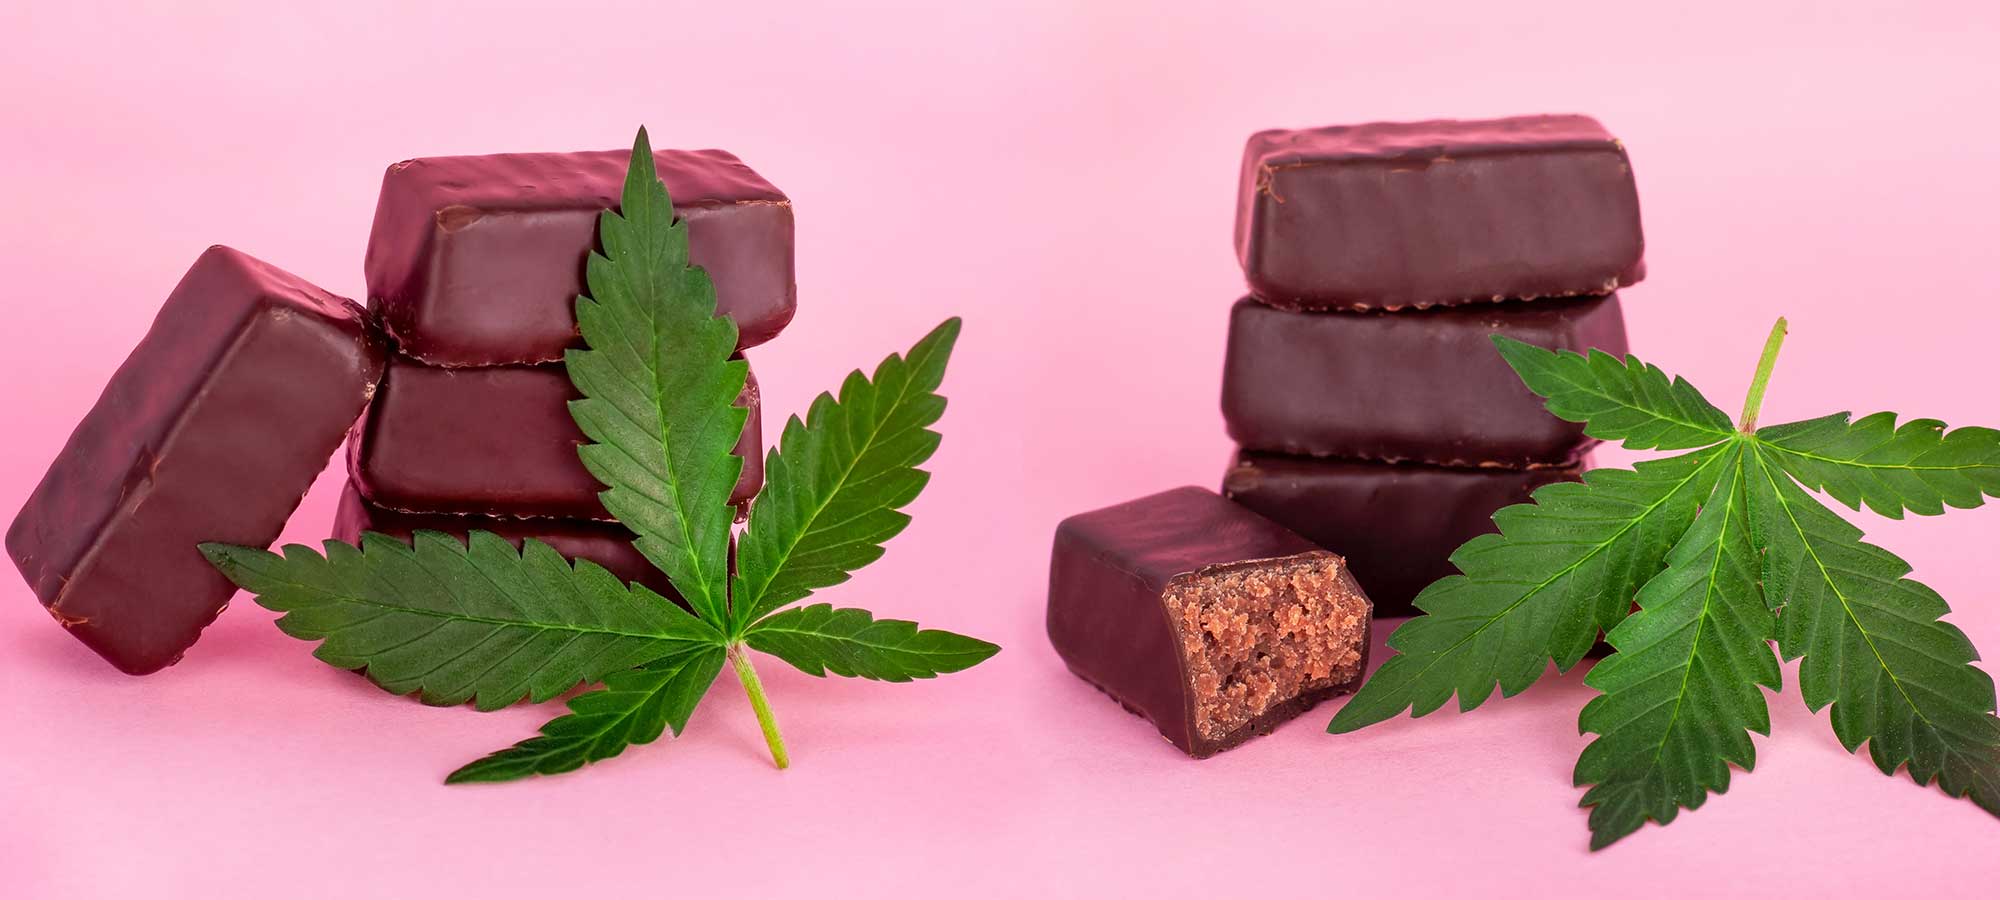 consuming marijuana edibles